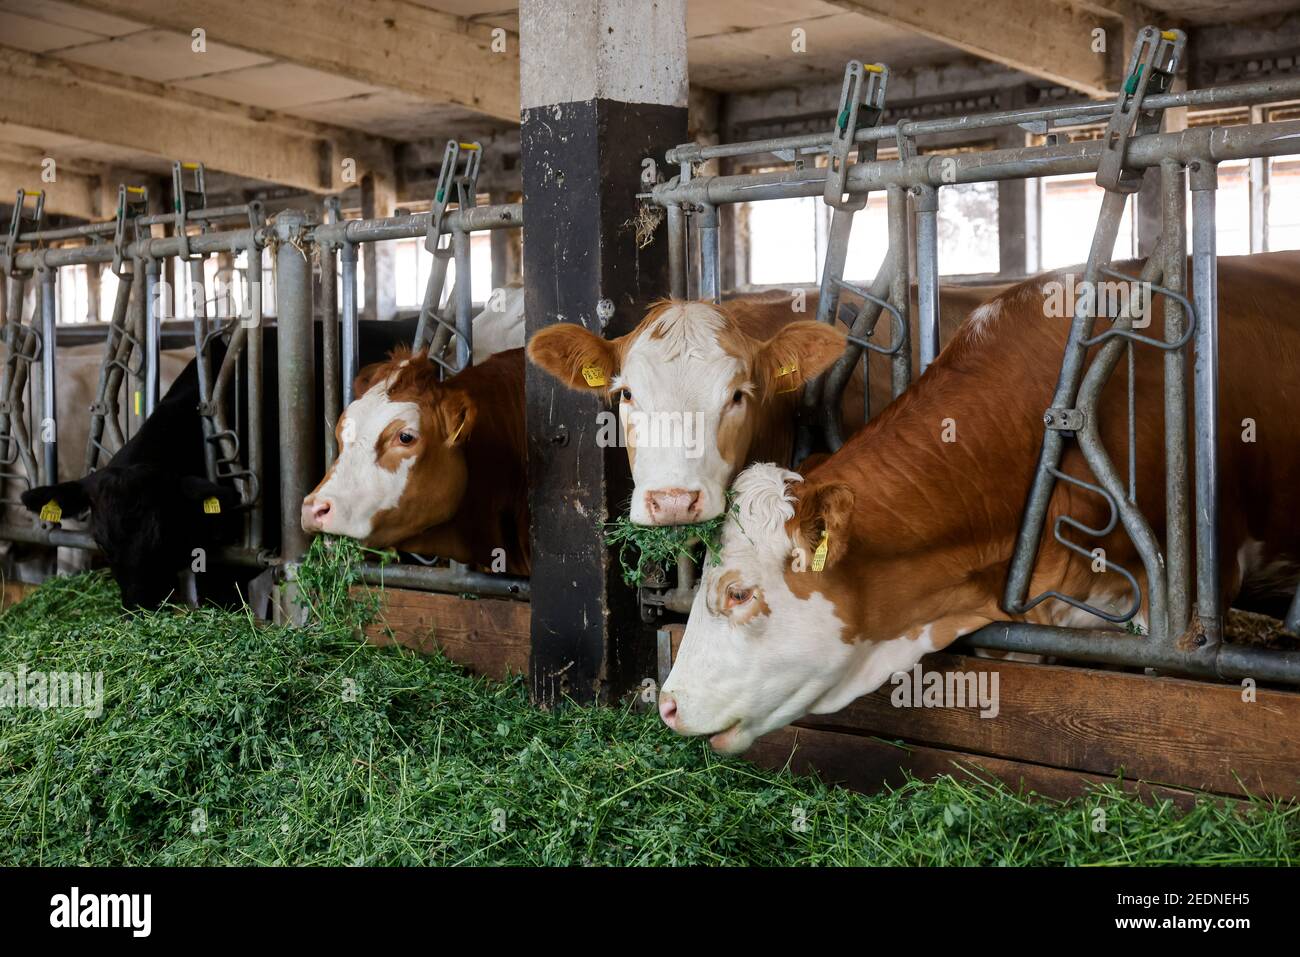 17.08.2020, , Saxe, Allemagne - bétail manger de l'herbe fraîche dans la grange, les animaux sont gardés sur la paille, avec des conditions d'espace généreux au-dessus de la Stanta organique Banque D'Images